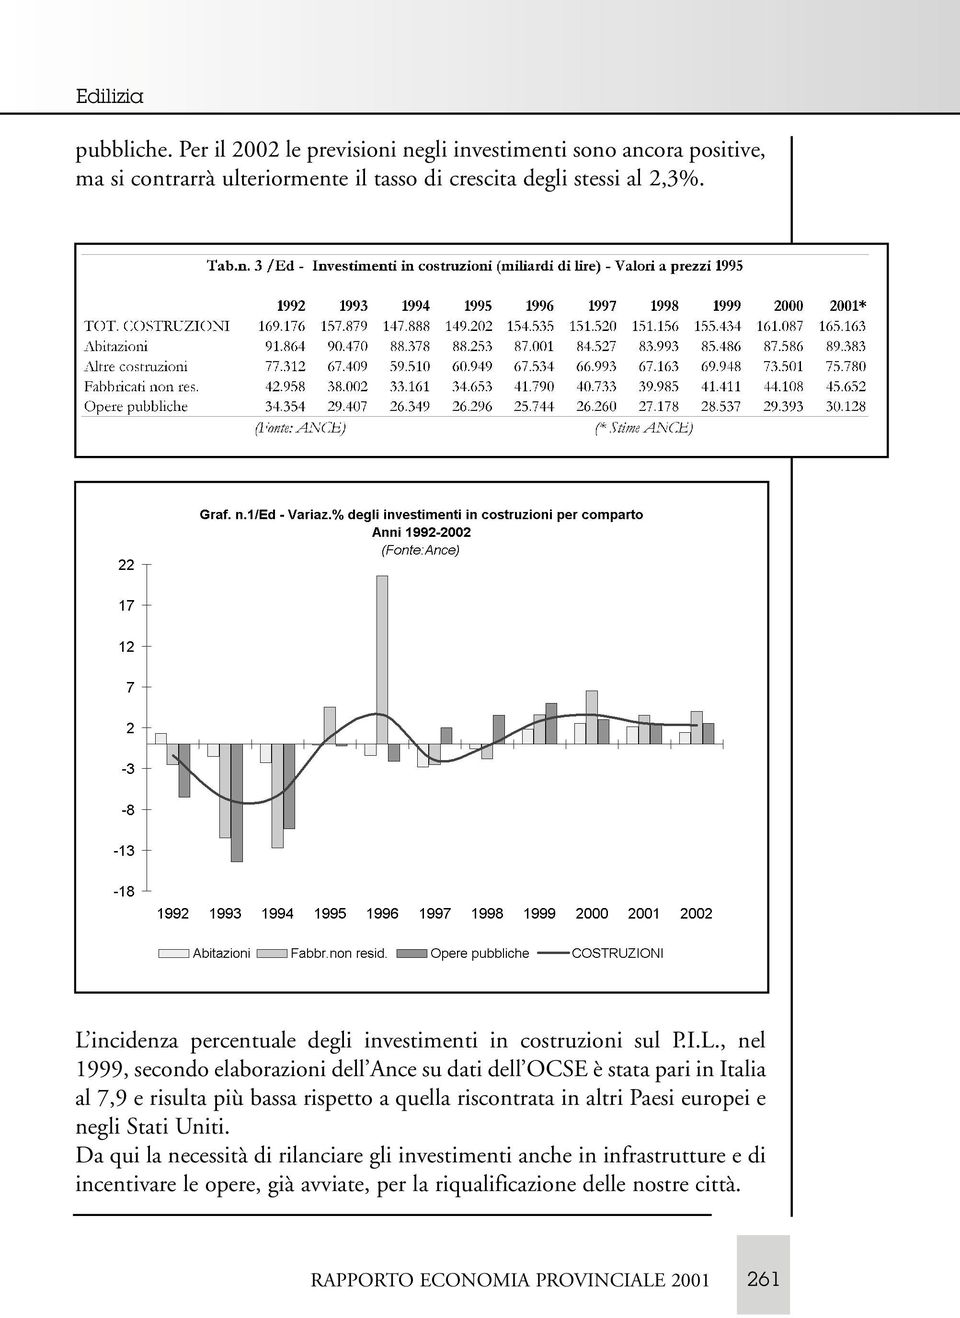 L incidenza percentuale degli investimenti in costruzioni sul P.I.L., nel 1999, secondo elaborazioni dell Ance su dati dell OCSE è stata pari in Italia